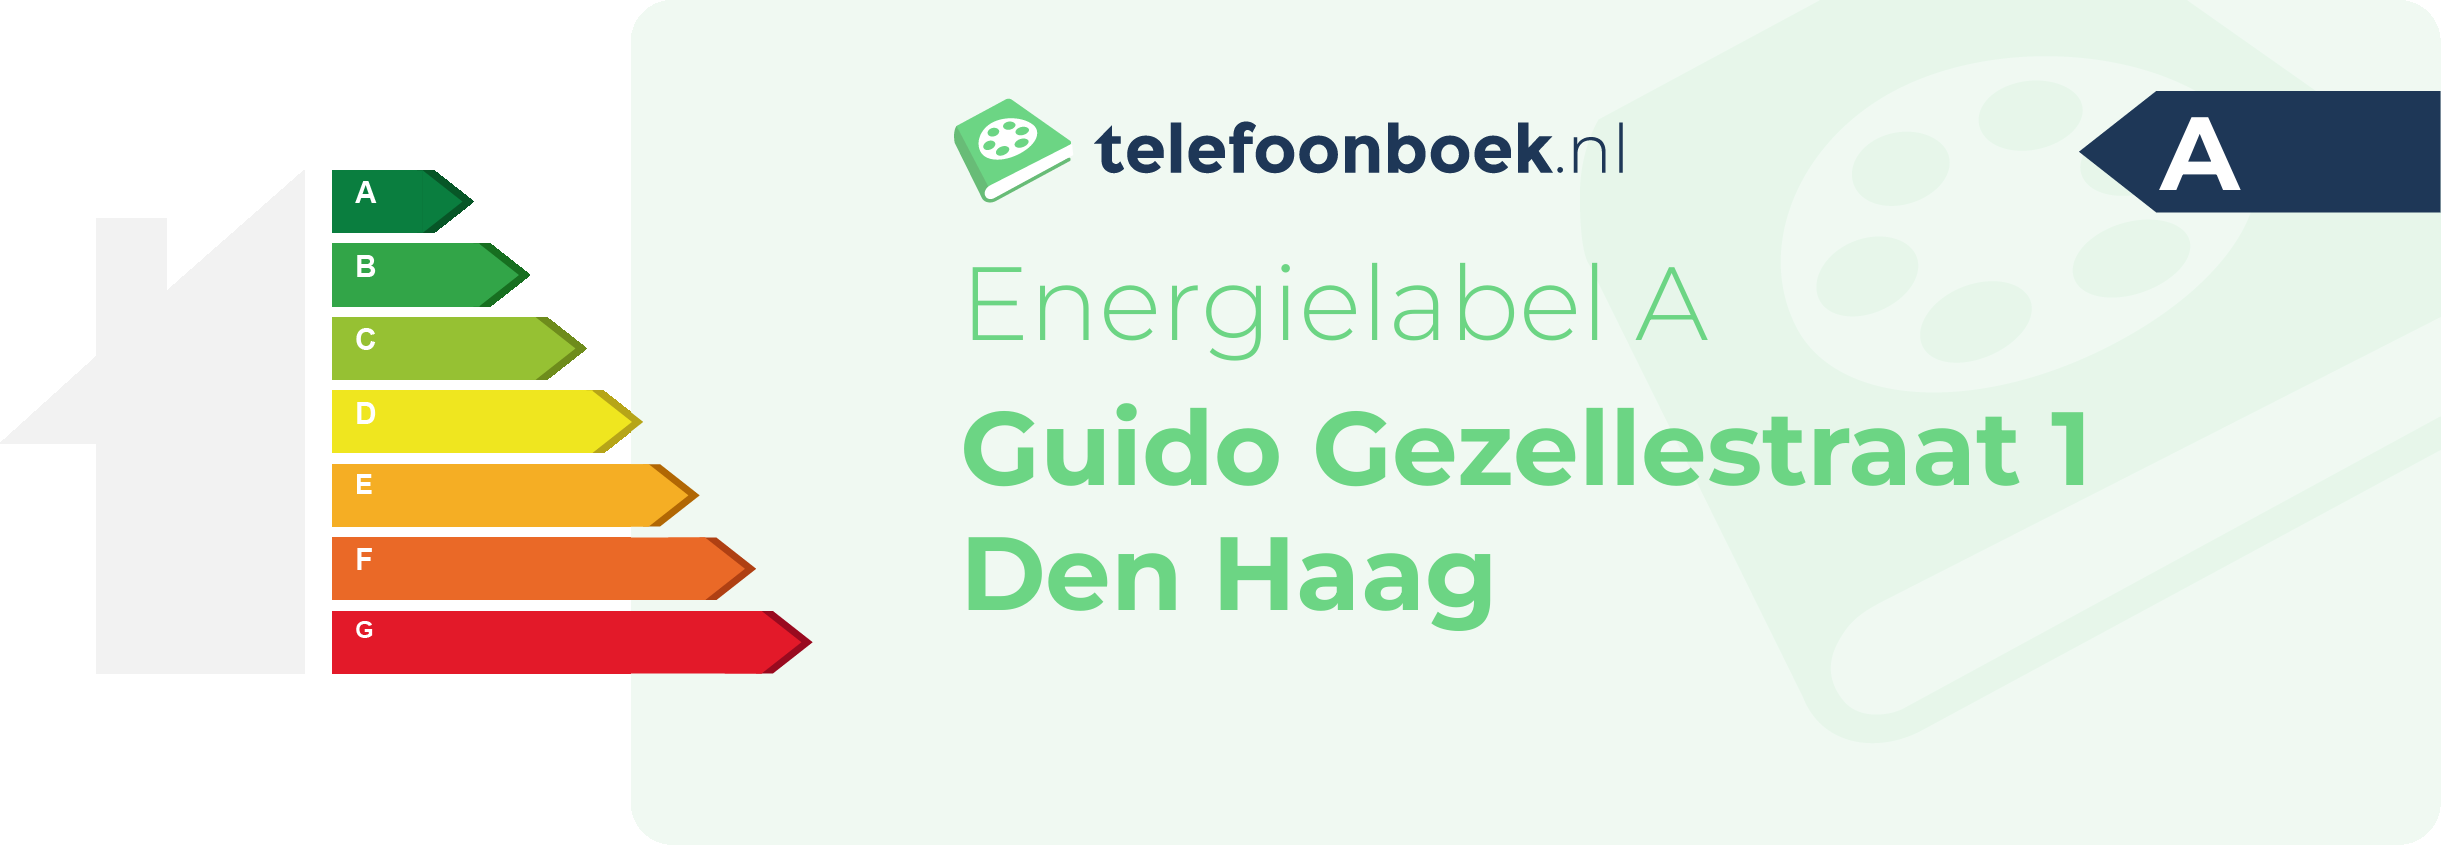 Energielabel Guido Gezellestraat 1 Den Haag